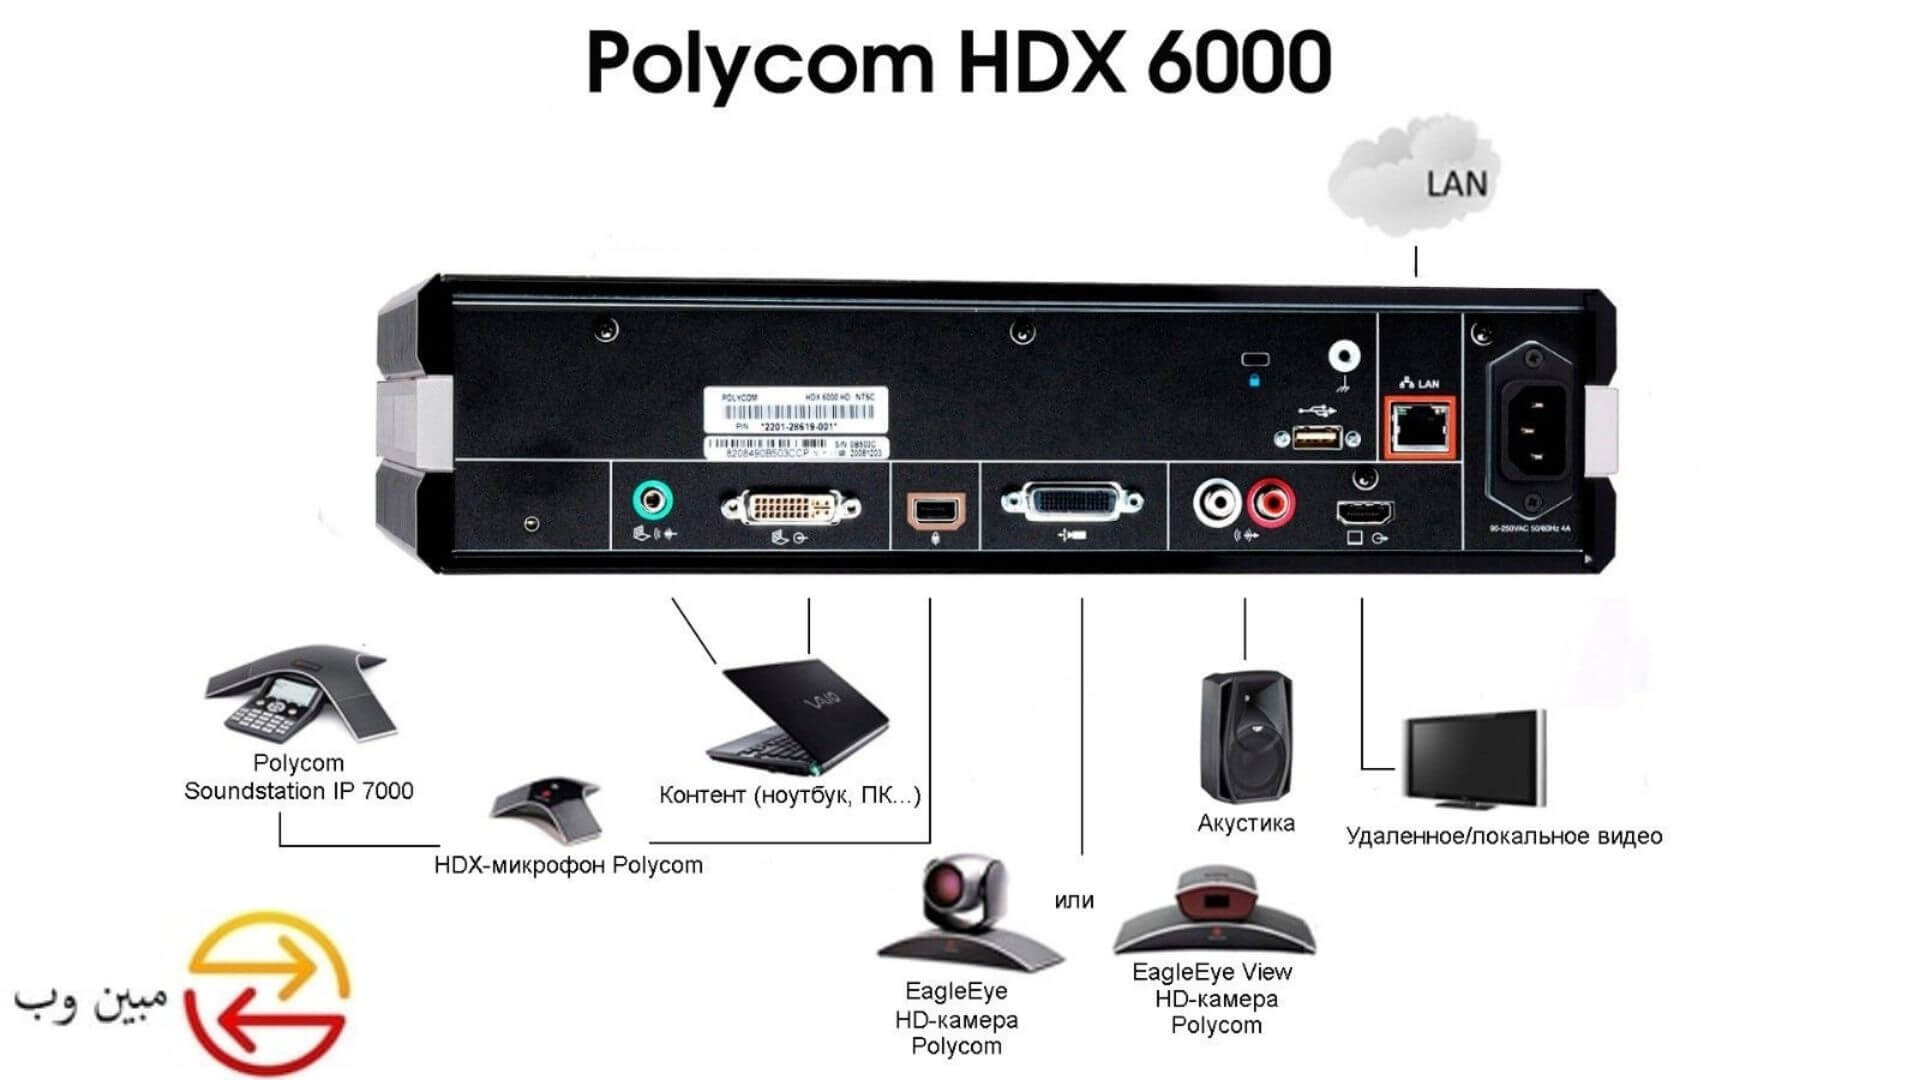 Polycom HDX 6000